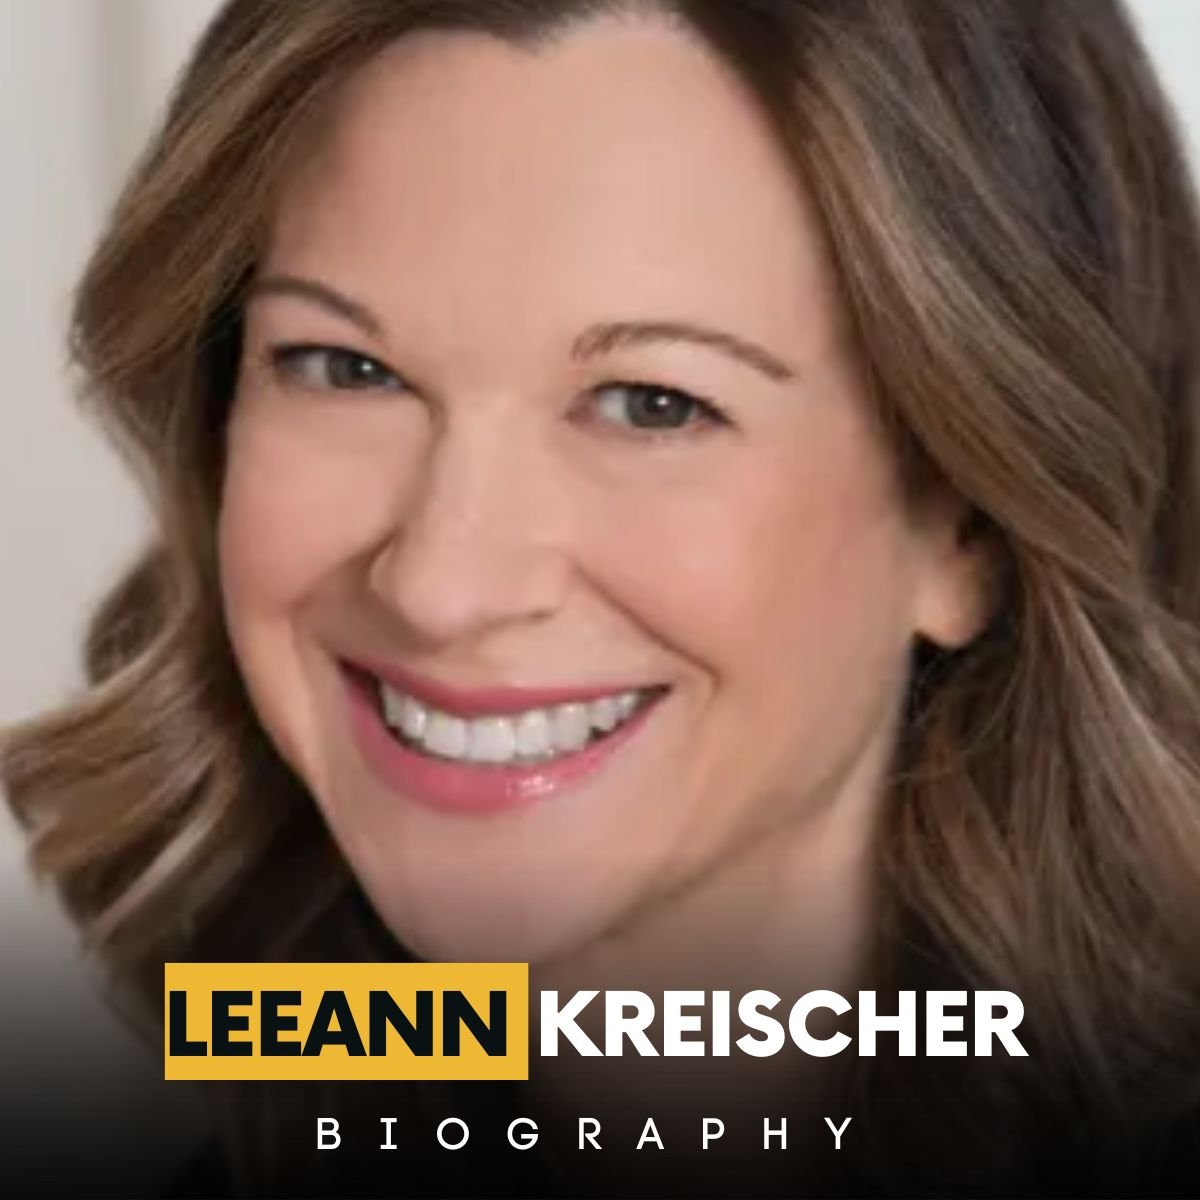 LeeAnn Kreischer Biography